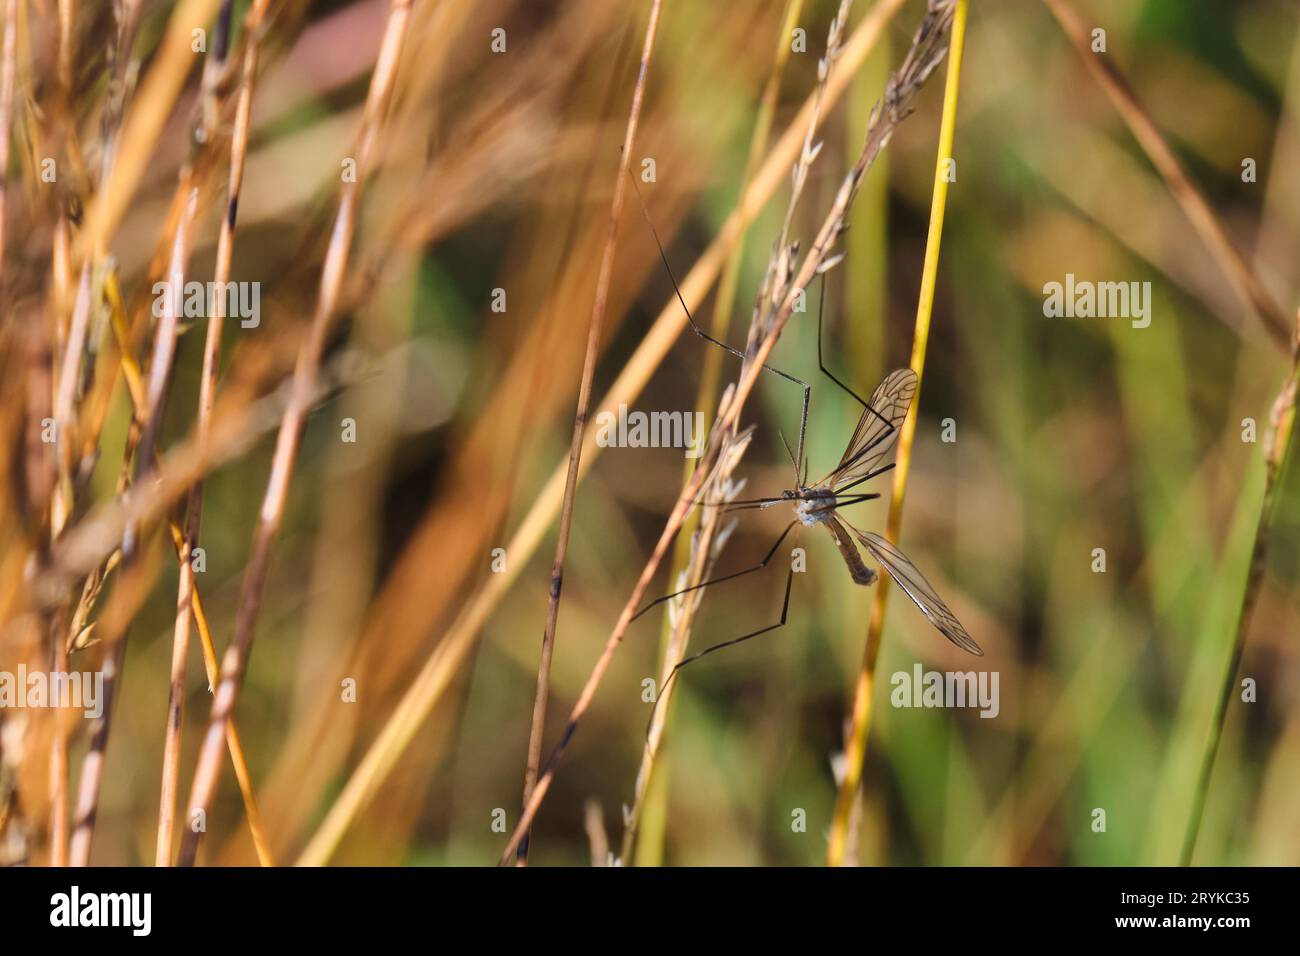 Foto macro di un insetto con lunghe gambe sottili e ali trasparenti seduto in erba marrone e verde Foto Stock